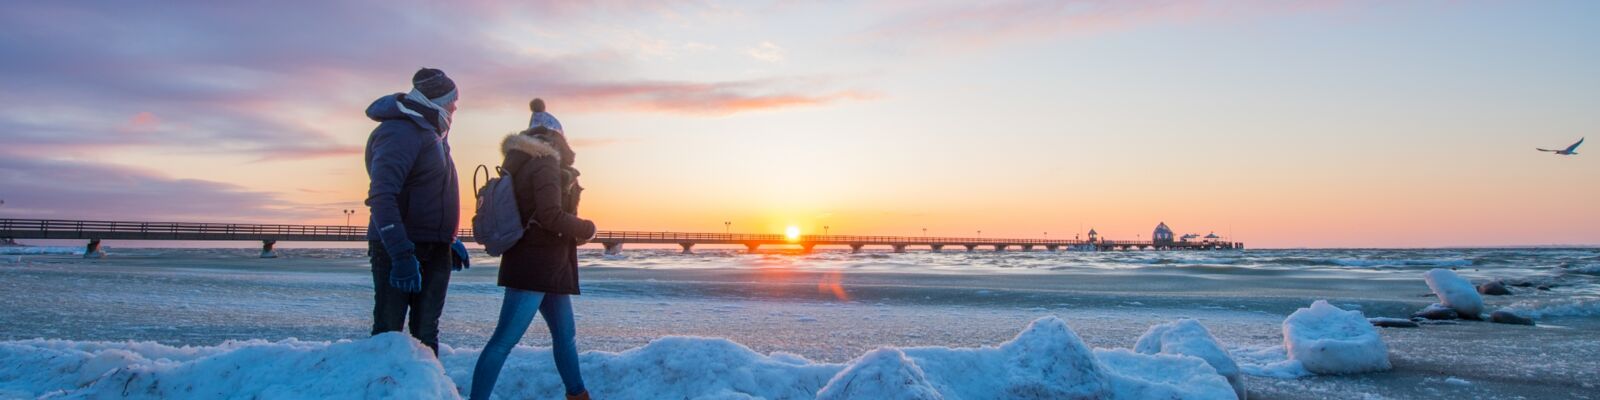 Winterspaziergang an der Ostsee Grömitz mit Seebrücke im Hintergrund